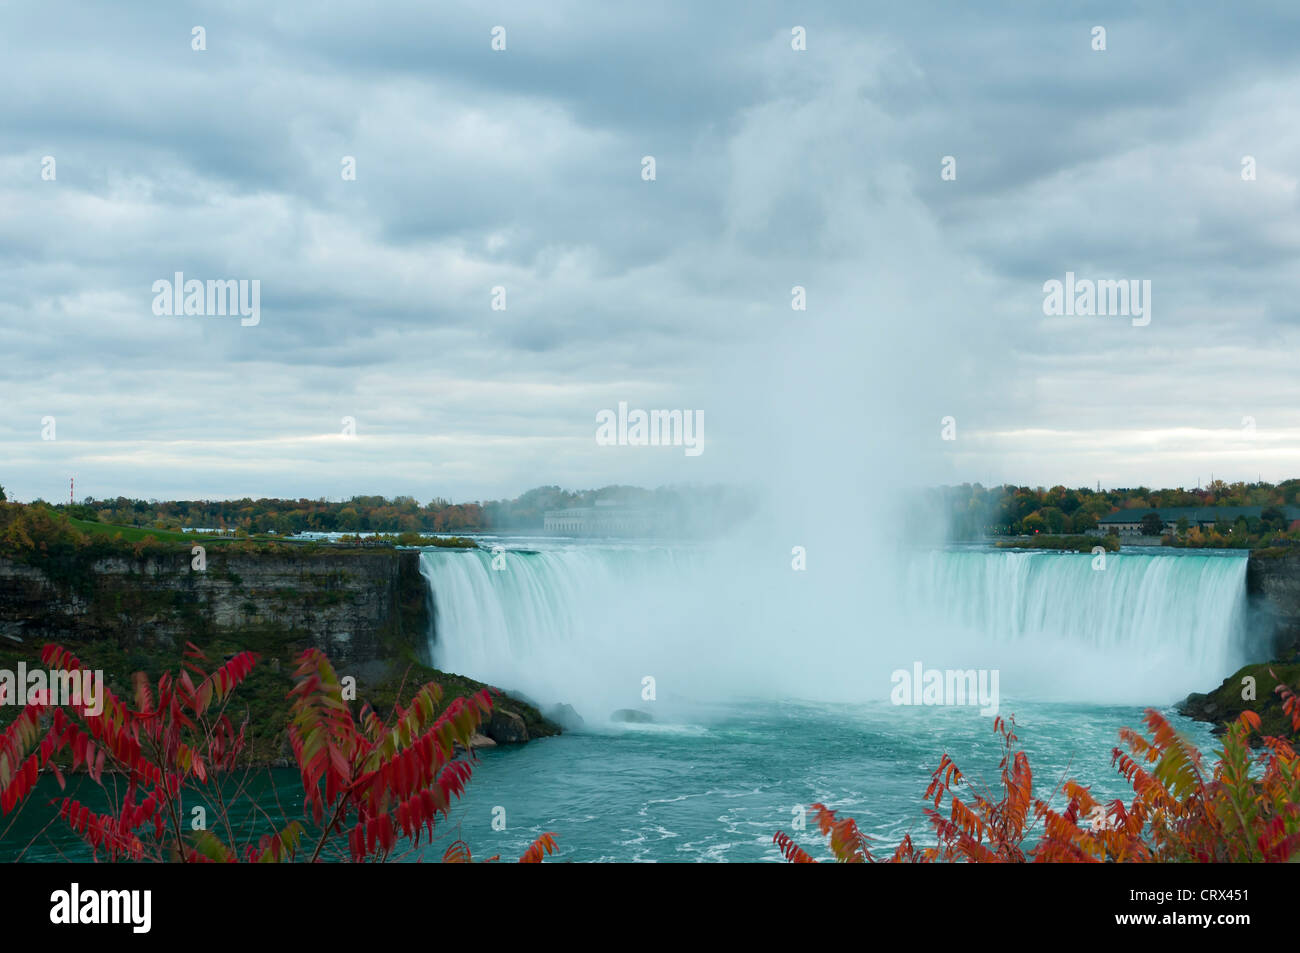 Spectacular Niagara falls by a cloudy day in Autumn, Ontario, Canada Stock Photo